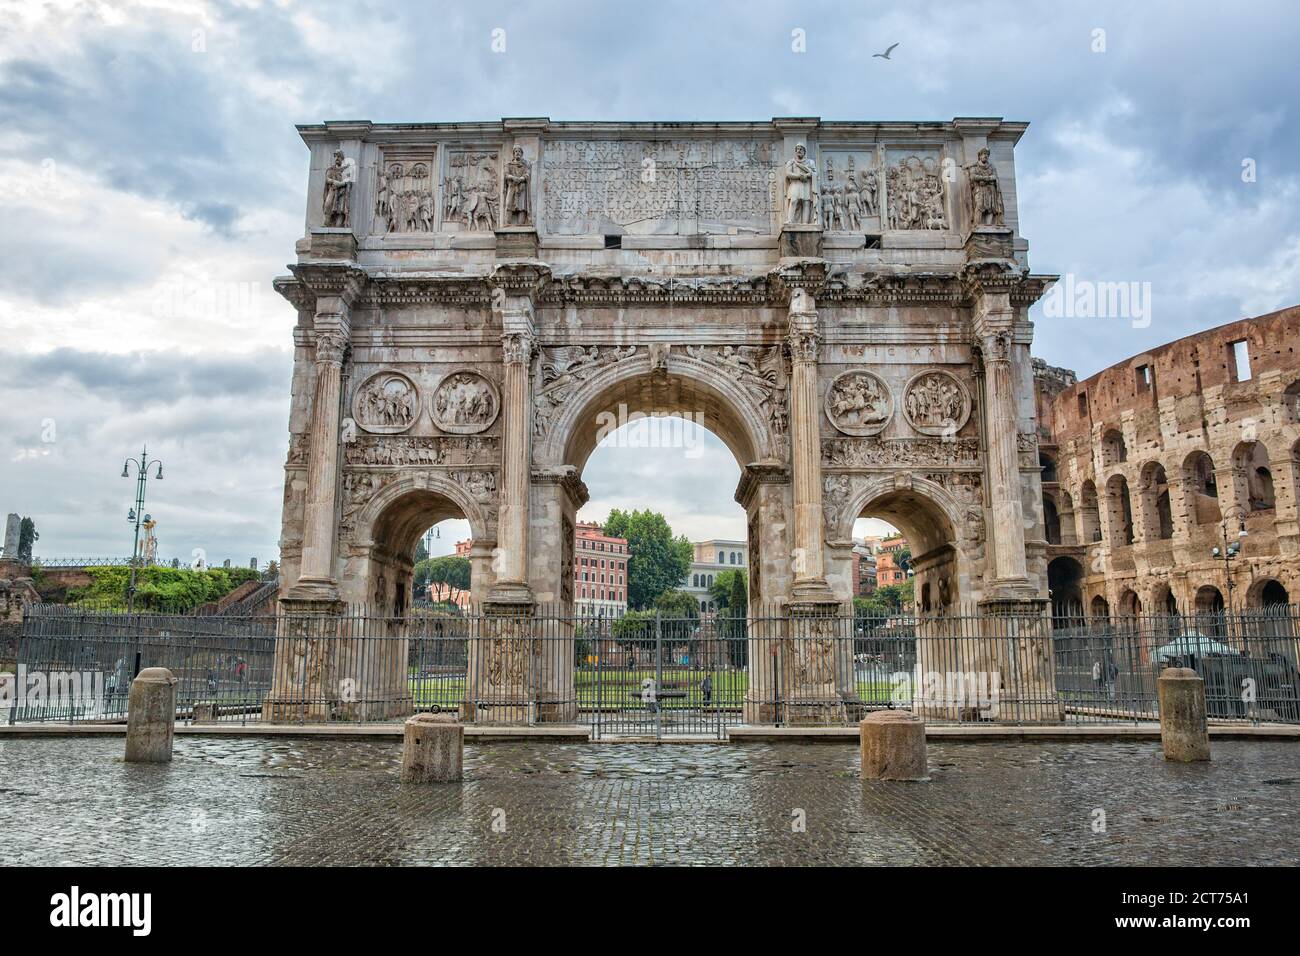 Arc de Constantine ou Arco di Costantino ou Arche de Triumphal (ad 312), l'une des trois arches triumphales romaines anciennes encore présentes à Rome, en Italie Banque D'Images